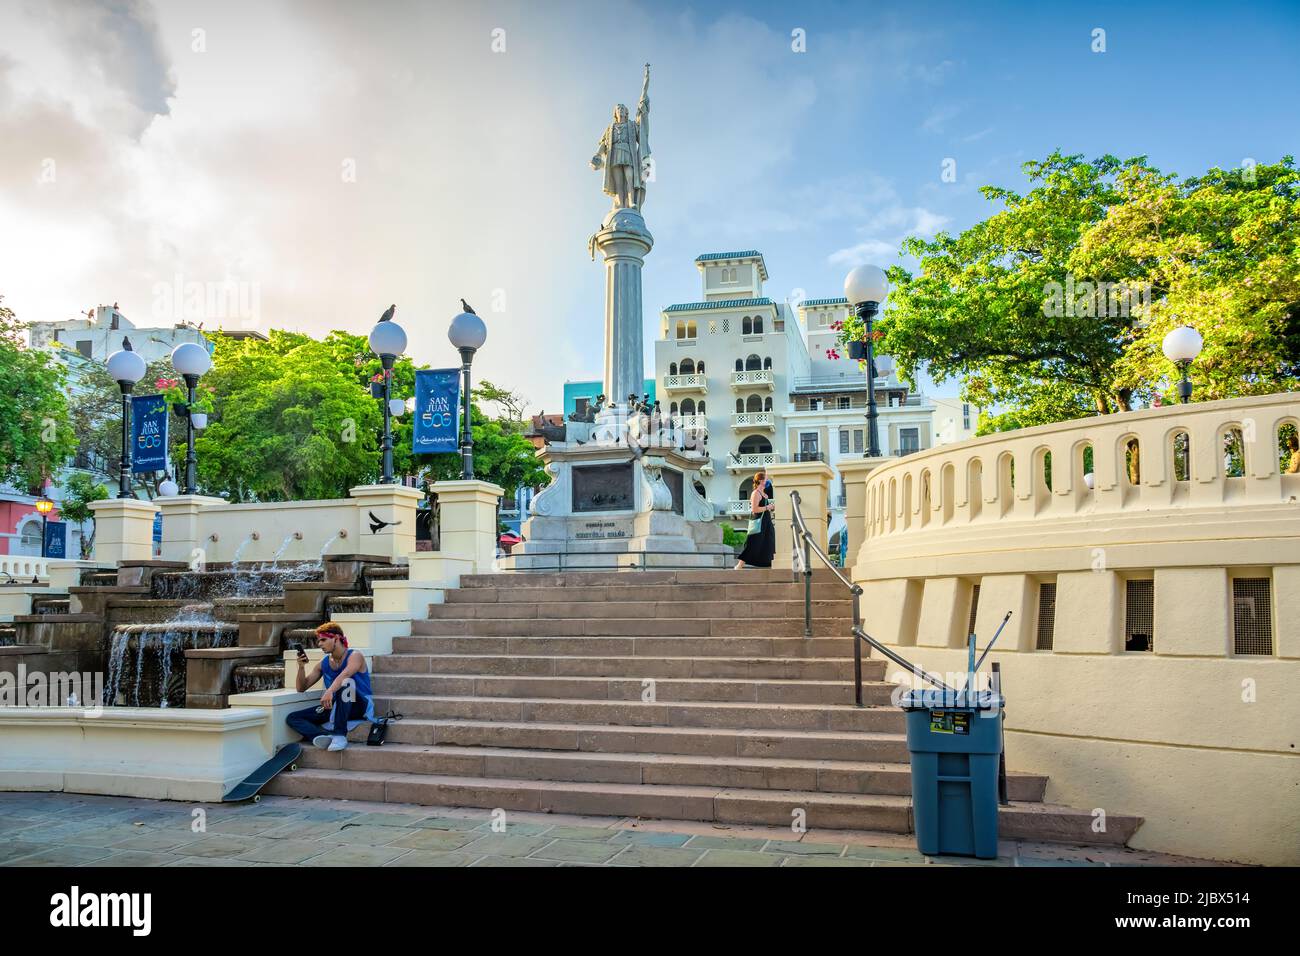 Les gens s'assoient et marchent sur la Plaza Colón dans le vieux San Juan, Porto Rico, par une journée ensoleillée. Banque D'Images